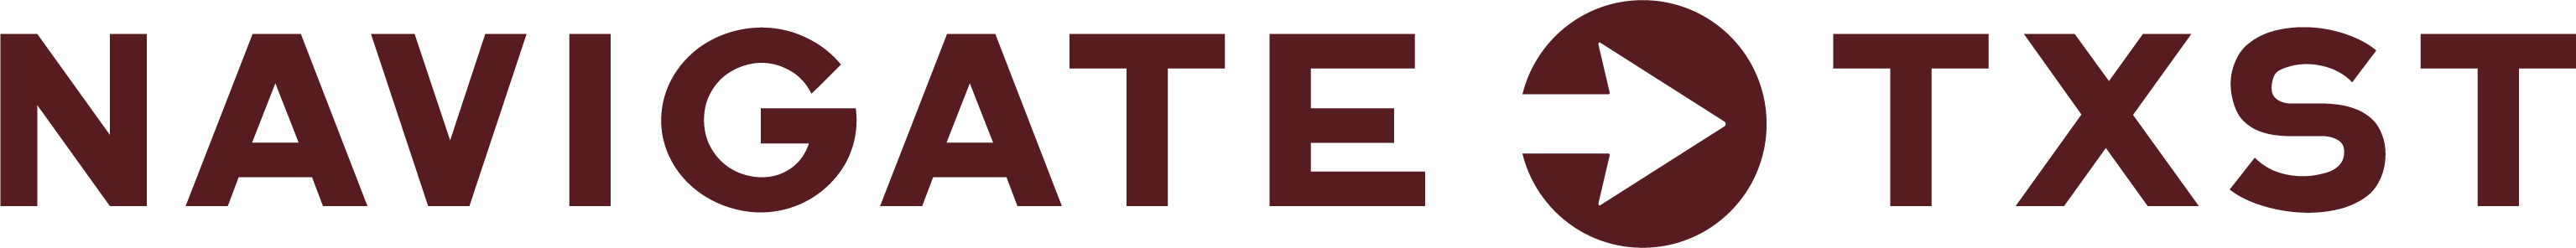 navigate txst logo